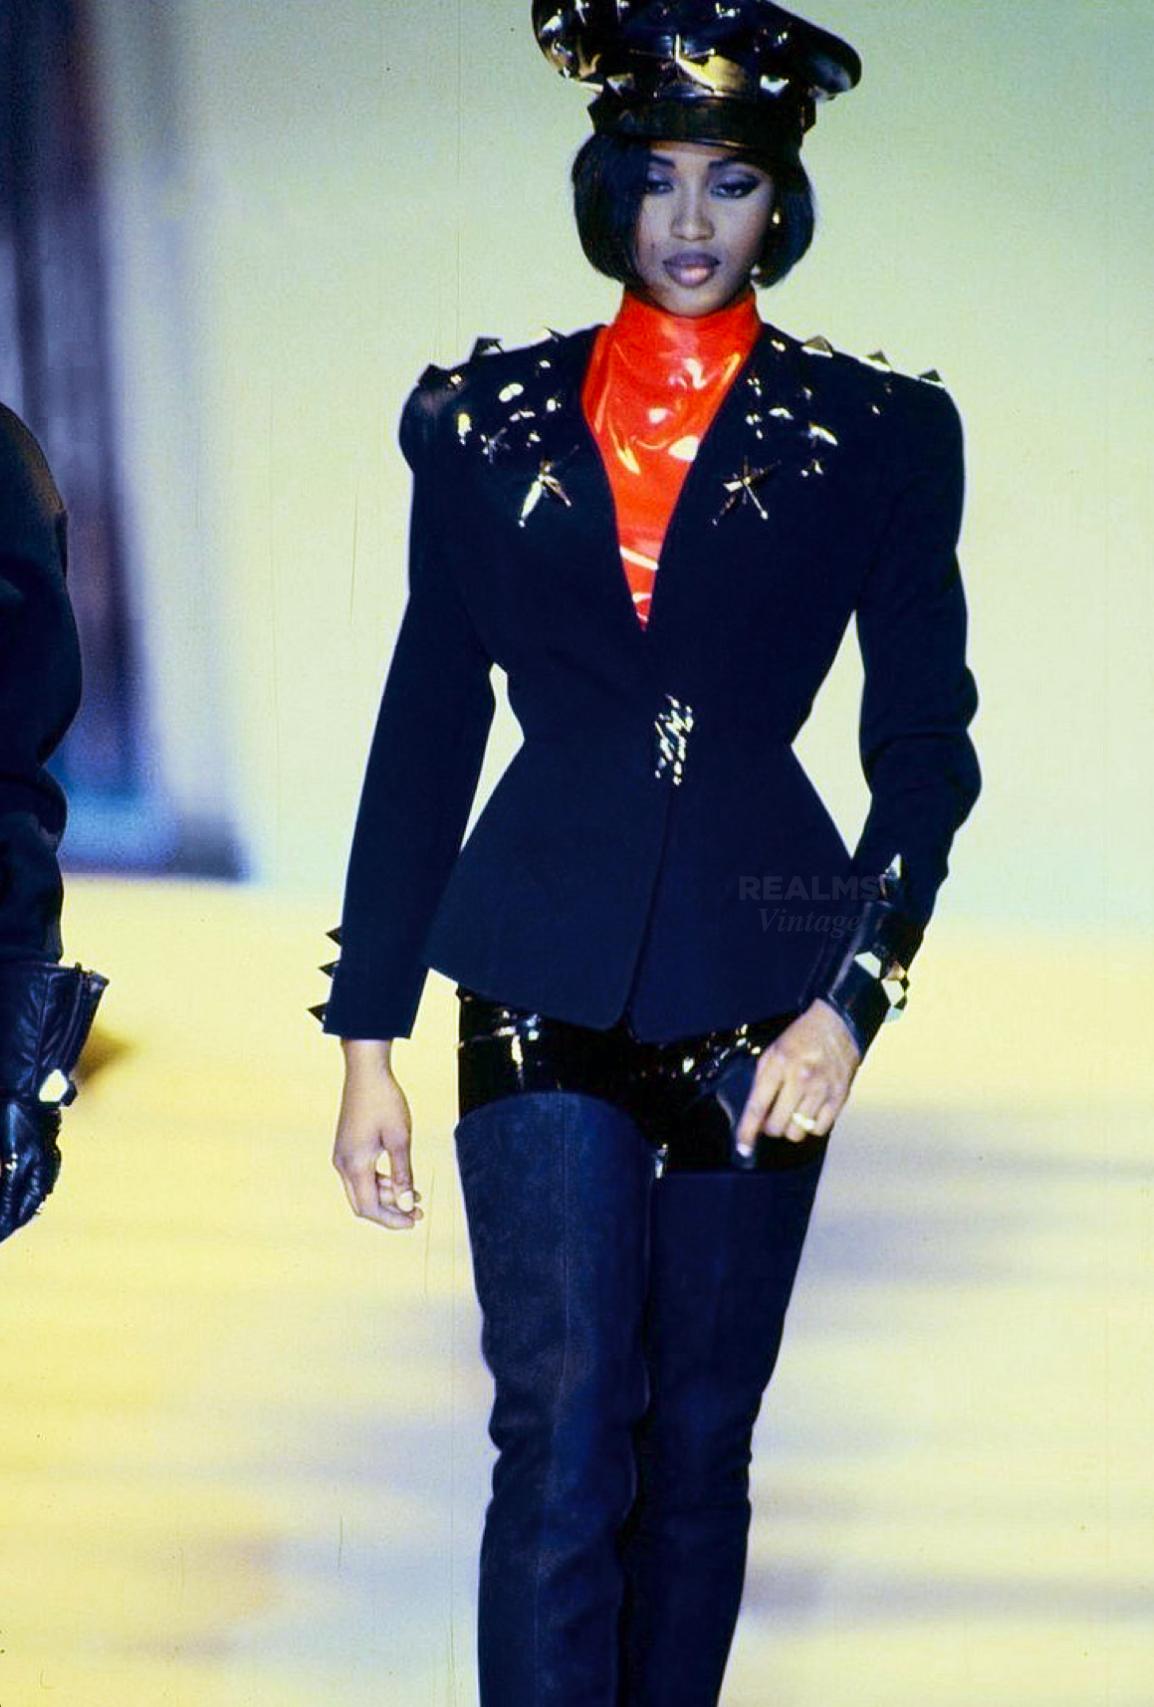 Ikonische Jacke von Thierry Mugler FW 1990. Eine ähnliche Version wurde von Naomi Campbell auf der Runway Show getragen.
Äußerst seltenes Sammlerstück, eine echte Thierry Mugler Statement-Jacke.

Atemberaubende schwarze, taillierte Jacke mit